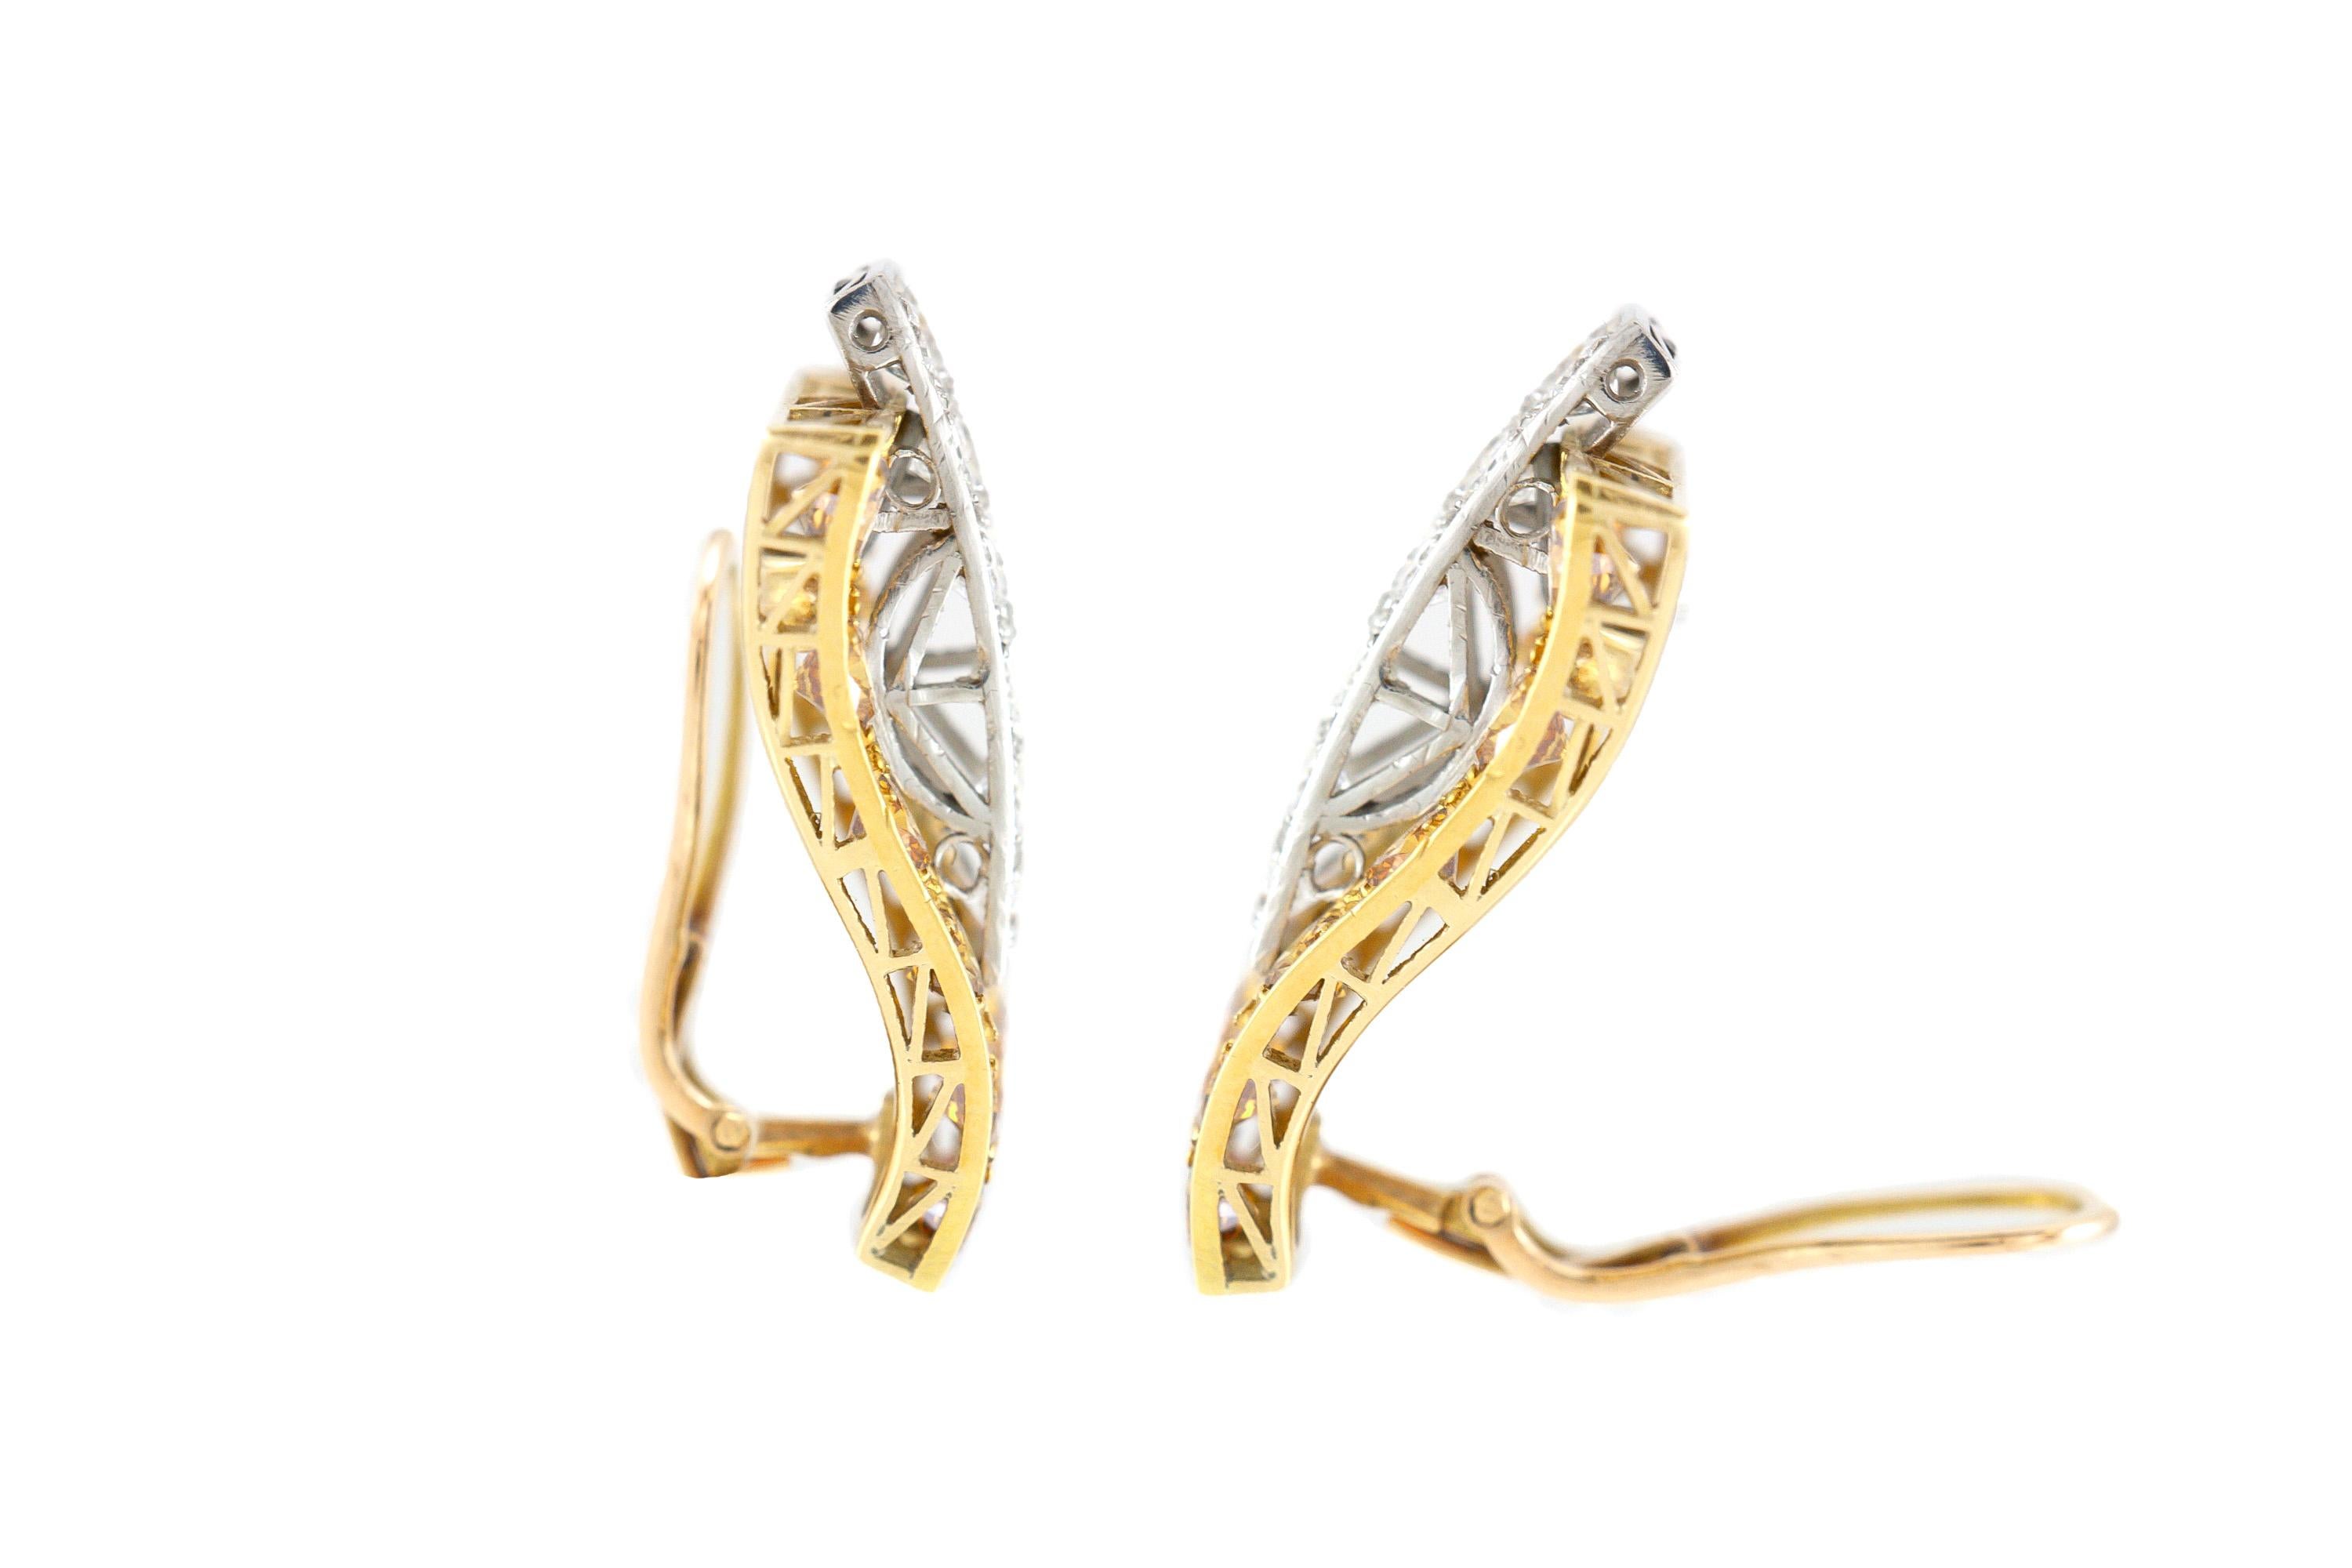 Die Ohrringe sind fein in 14k Gelbgold mit Diamanten mit einem Gesamtgewicht von etwa 5,00 Karat gefertigt. 
Um 1980.

